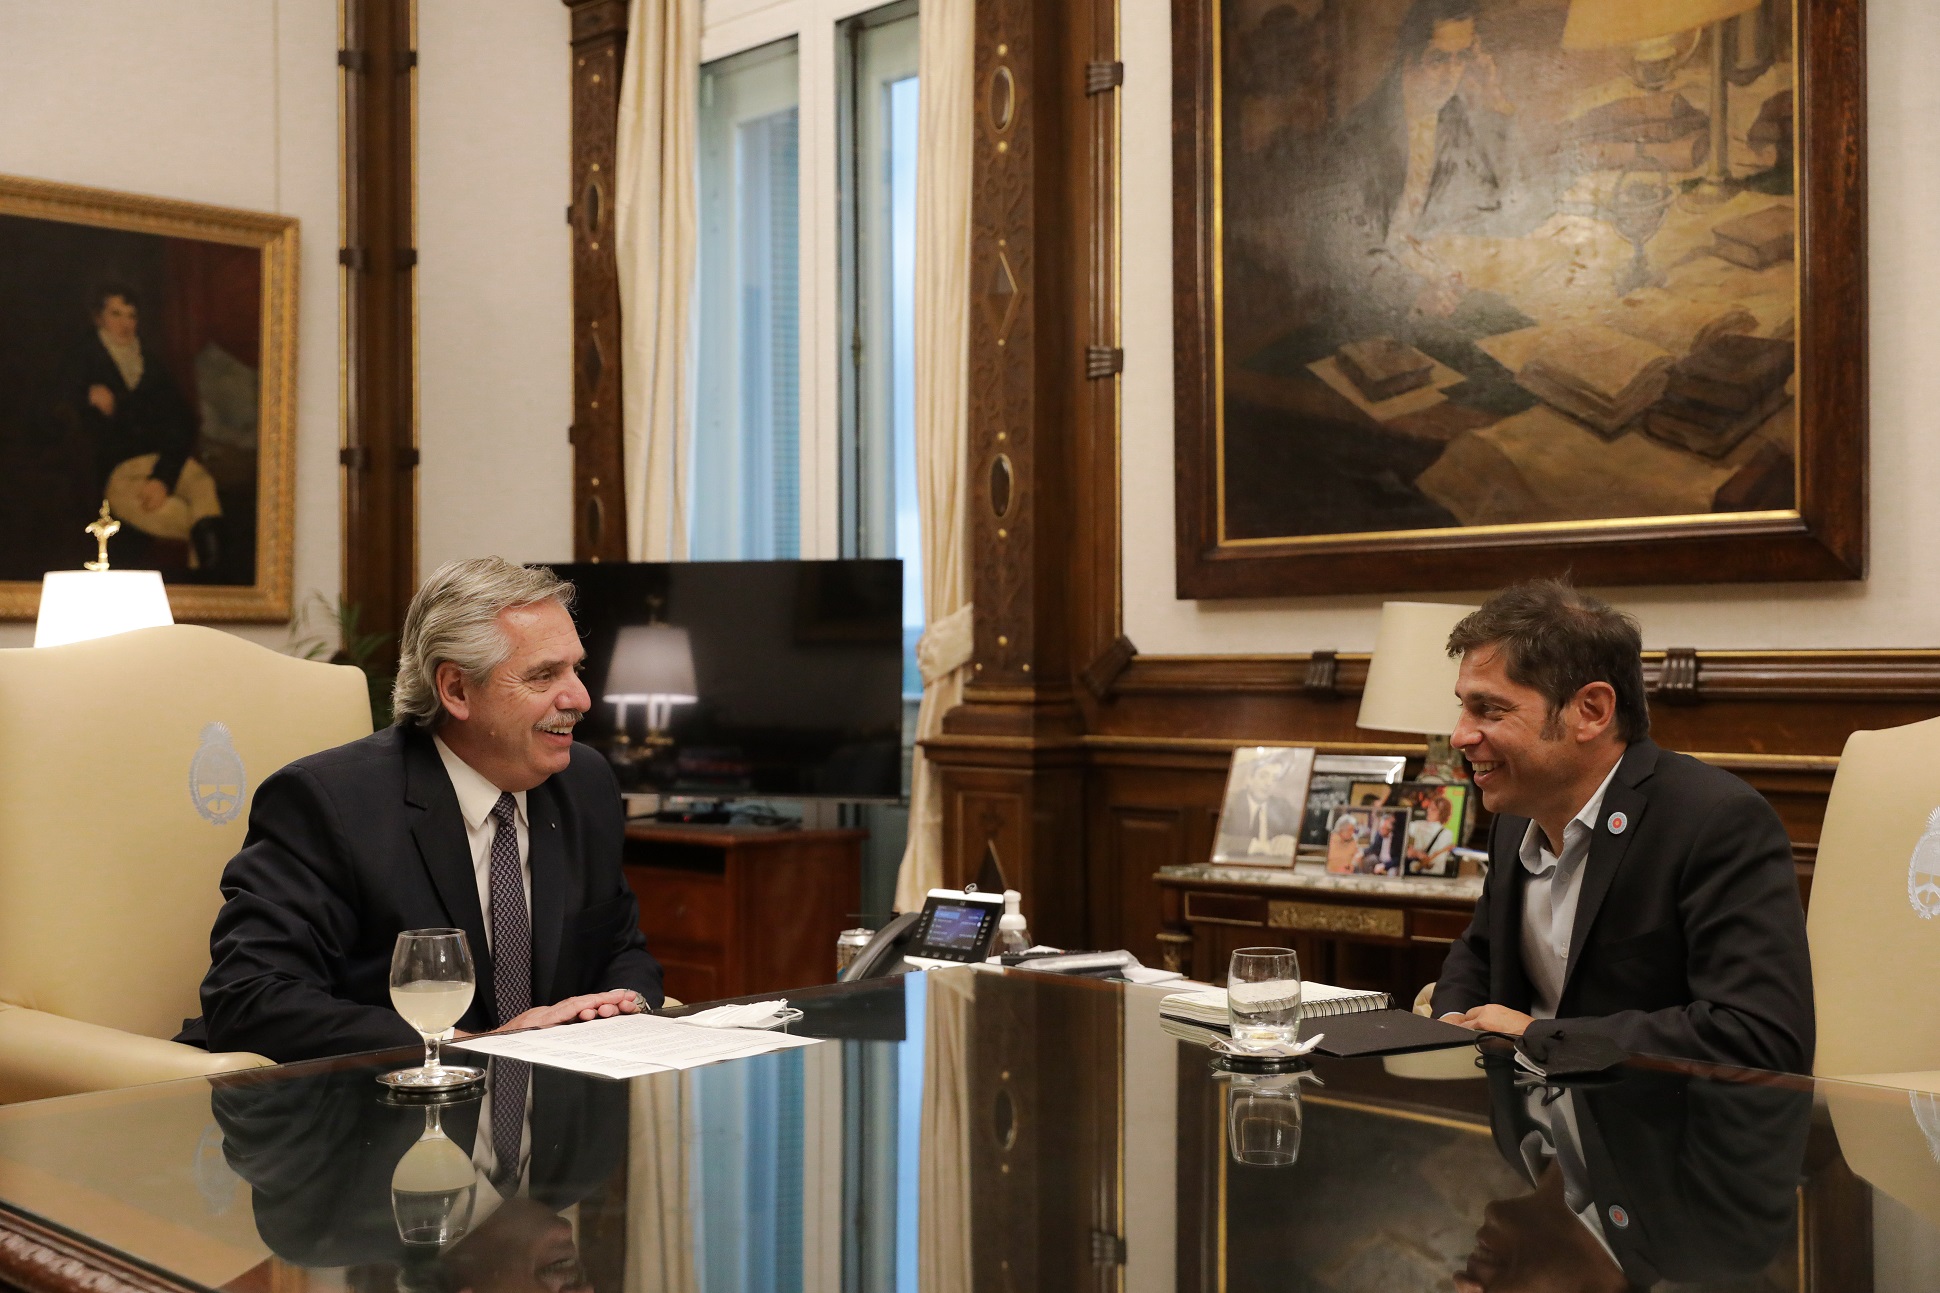 El presidente se reunió con el gobernador de la provincia de Buenos Aires, Axel Kicillof